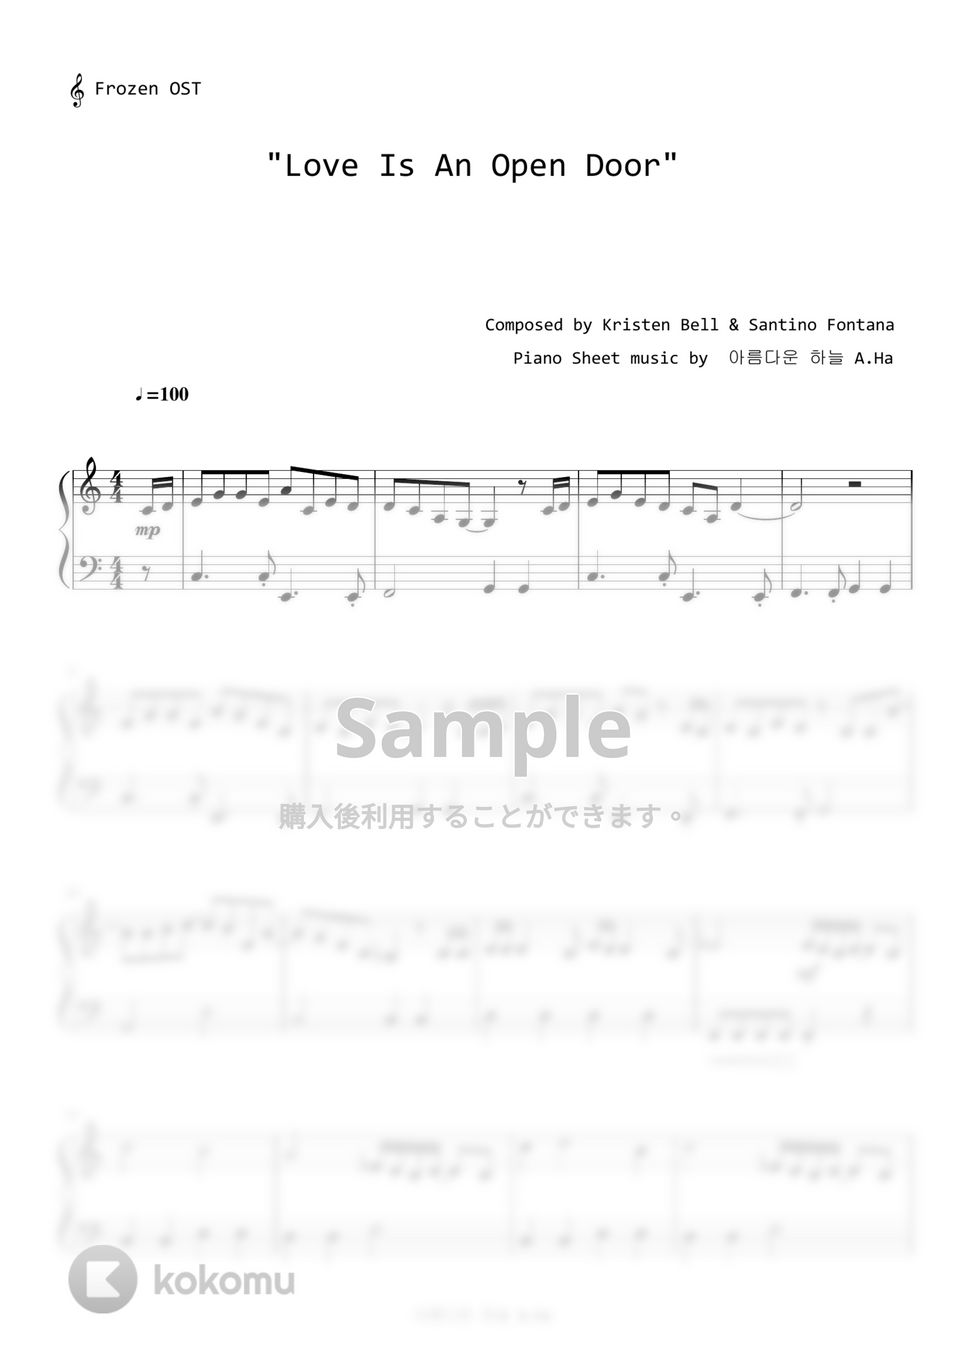 アナと雪の女王 - Love Is an Open Door（とびら開けて） (Level 1 - Easy version) by A.Ha